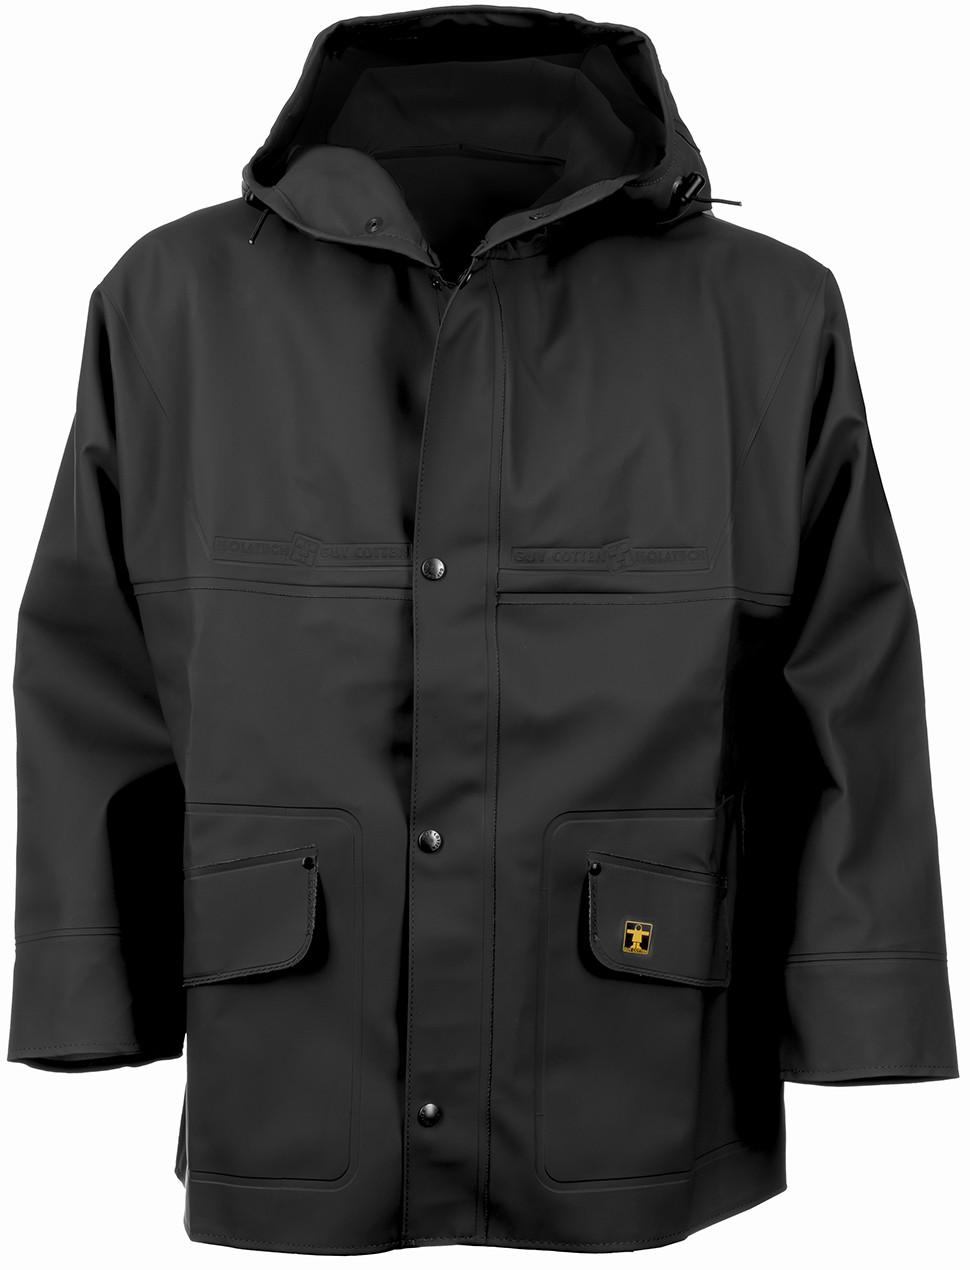 Guy Cotten Isoder Glentex Waterproof Jacket Workwear Outdoor Clothing Heavy Duty 